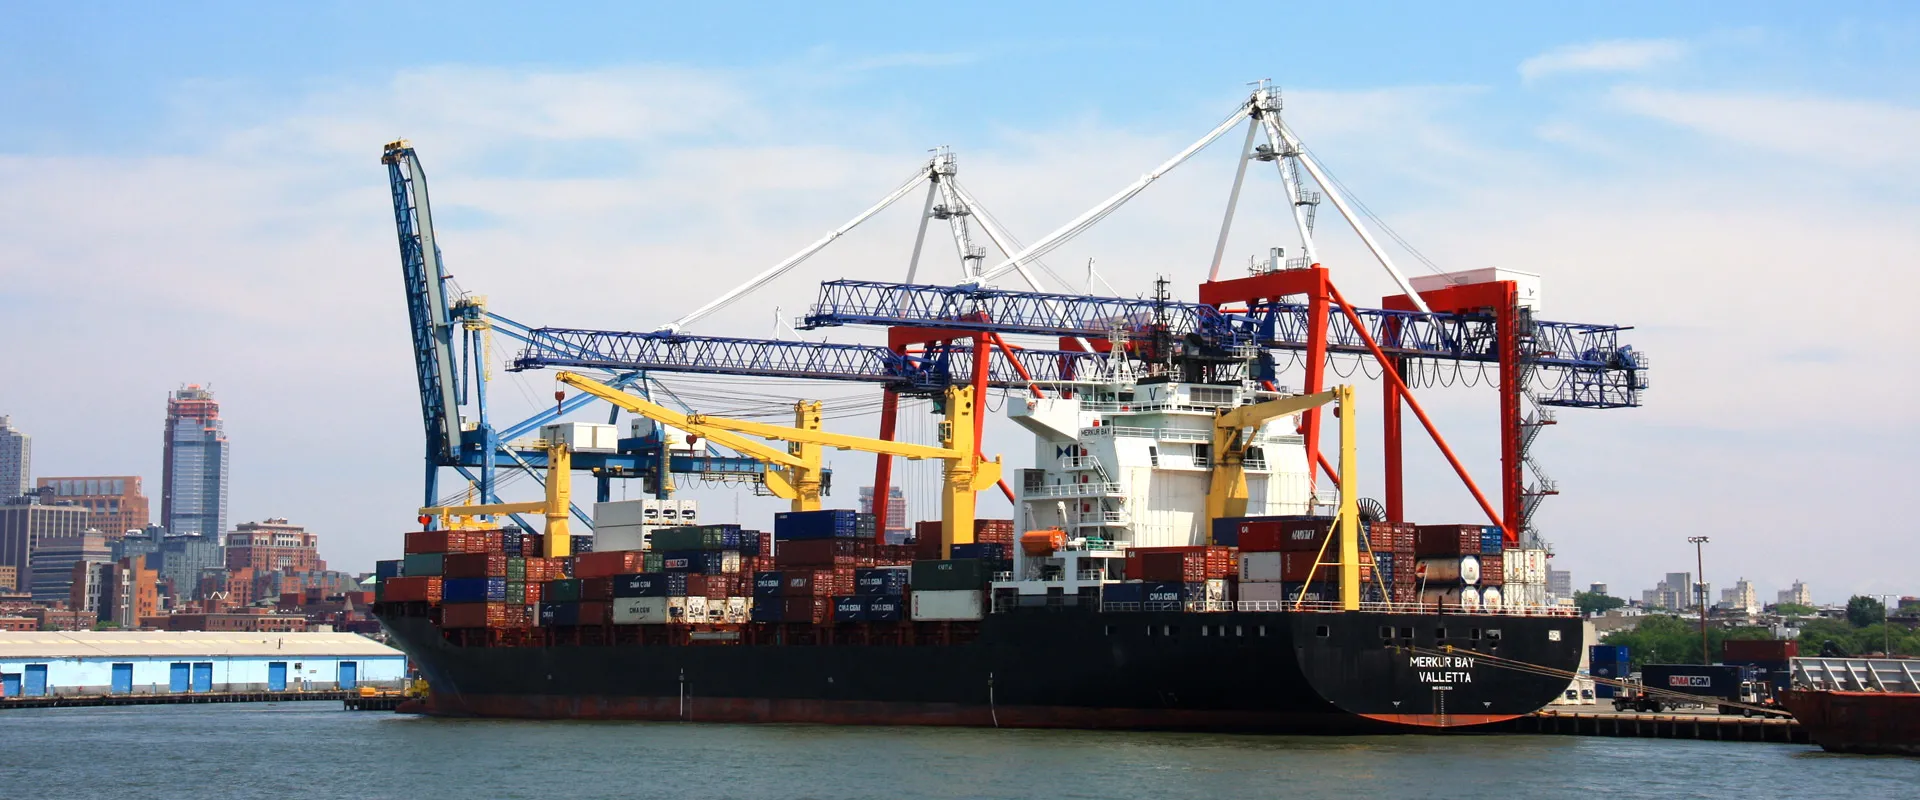 bg containerhafen 1920x800